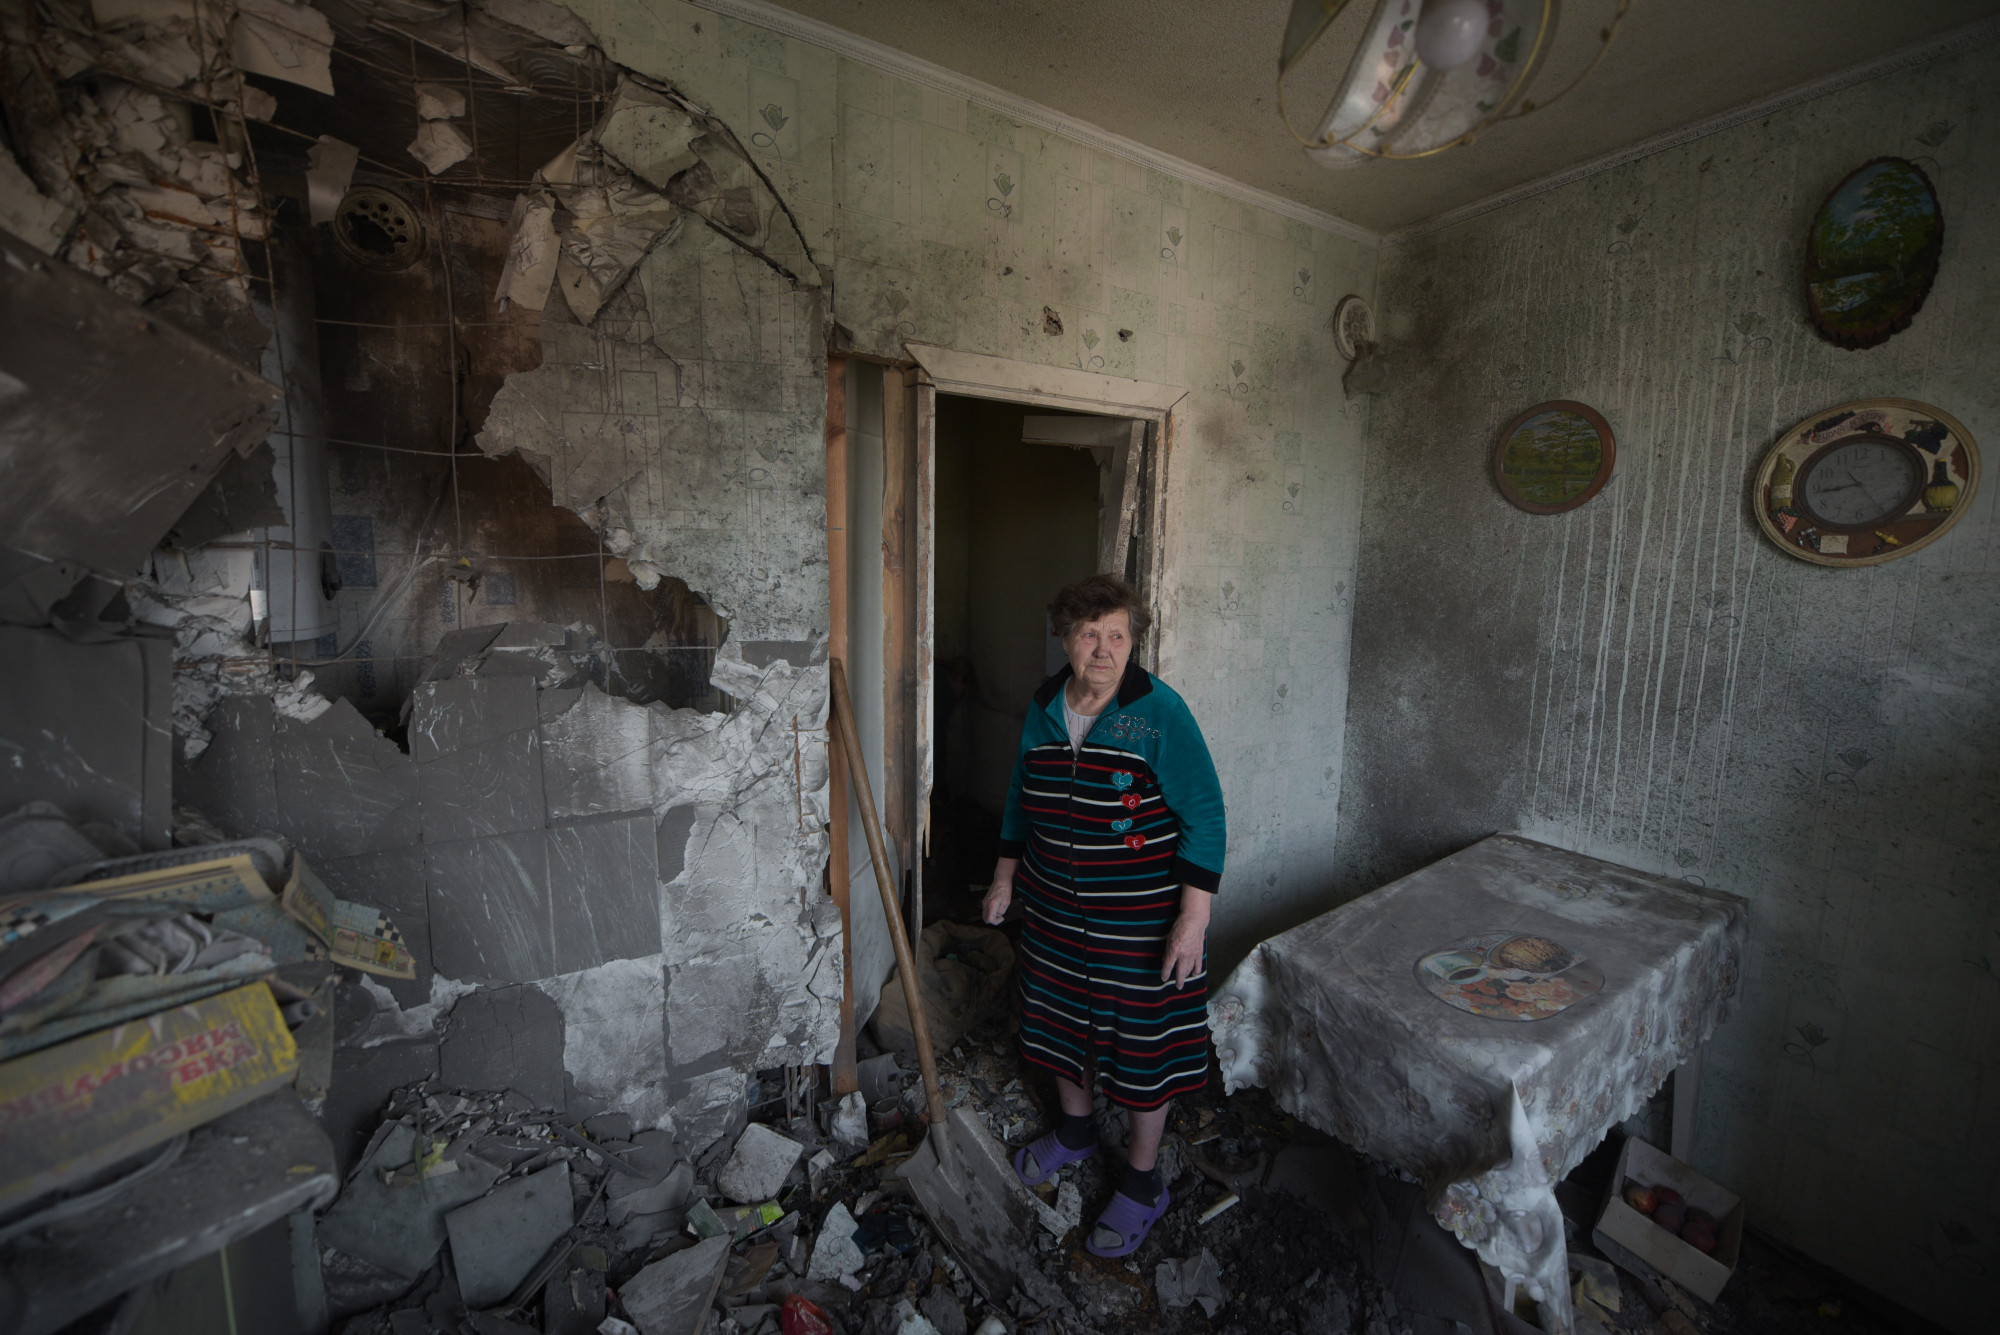 Az ukránok továbbra is eléggé bíznak Zelenszkijben és a győzelemben, de fegyvert fogni jóval kevésbé szeretnének